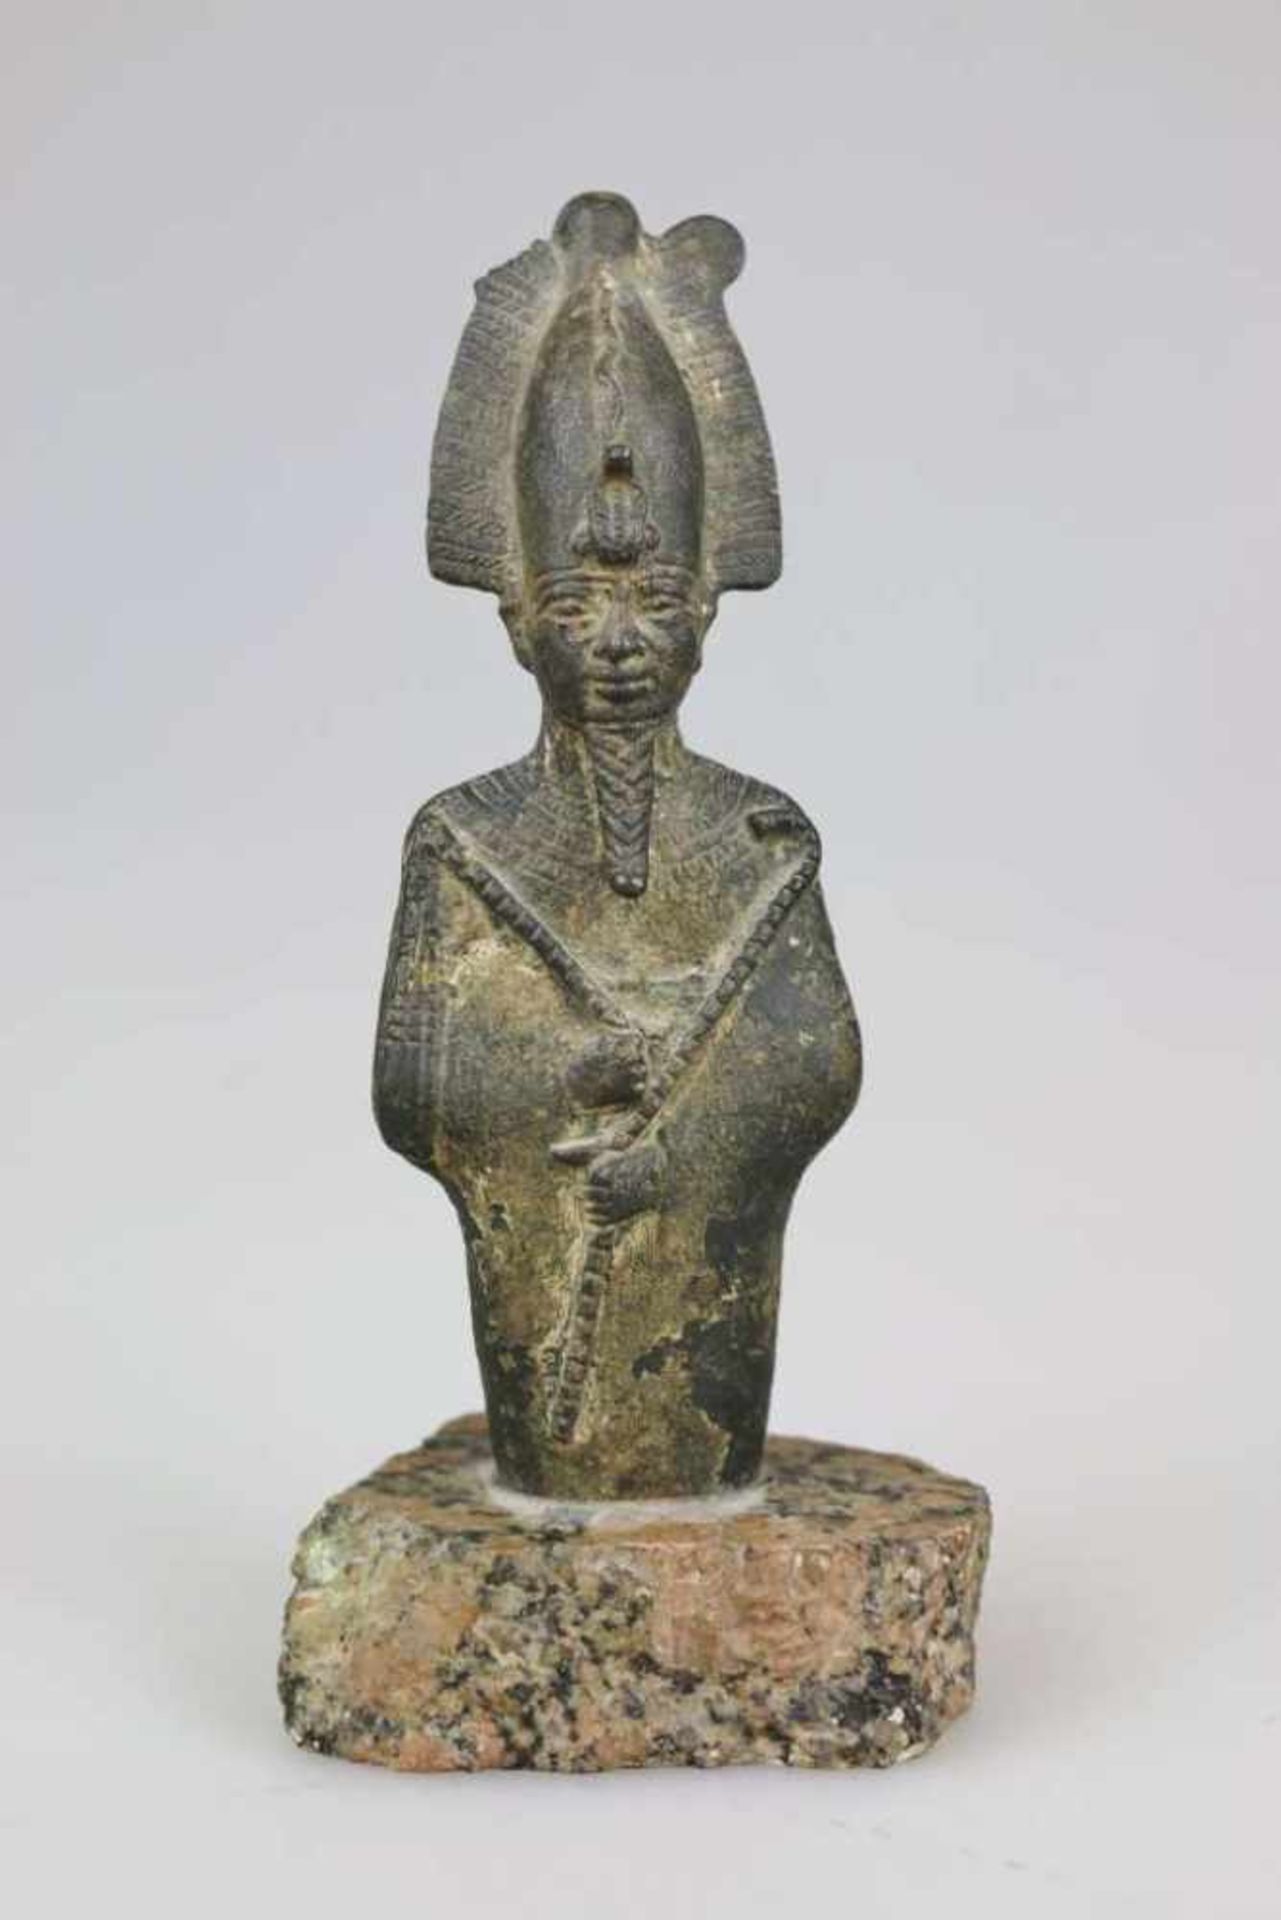 Statuette des Osiris, Ägypten, wohl 25. Dynastie, ca. 700 vor Chr., Bronzeguss. Höhe ohne Sockel: